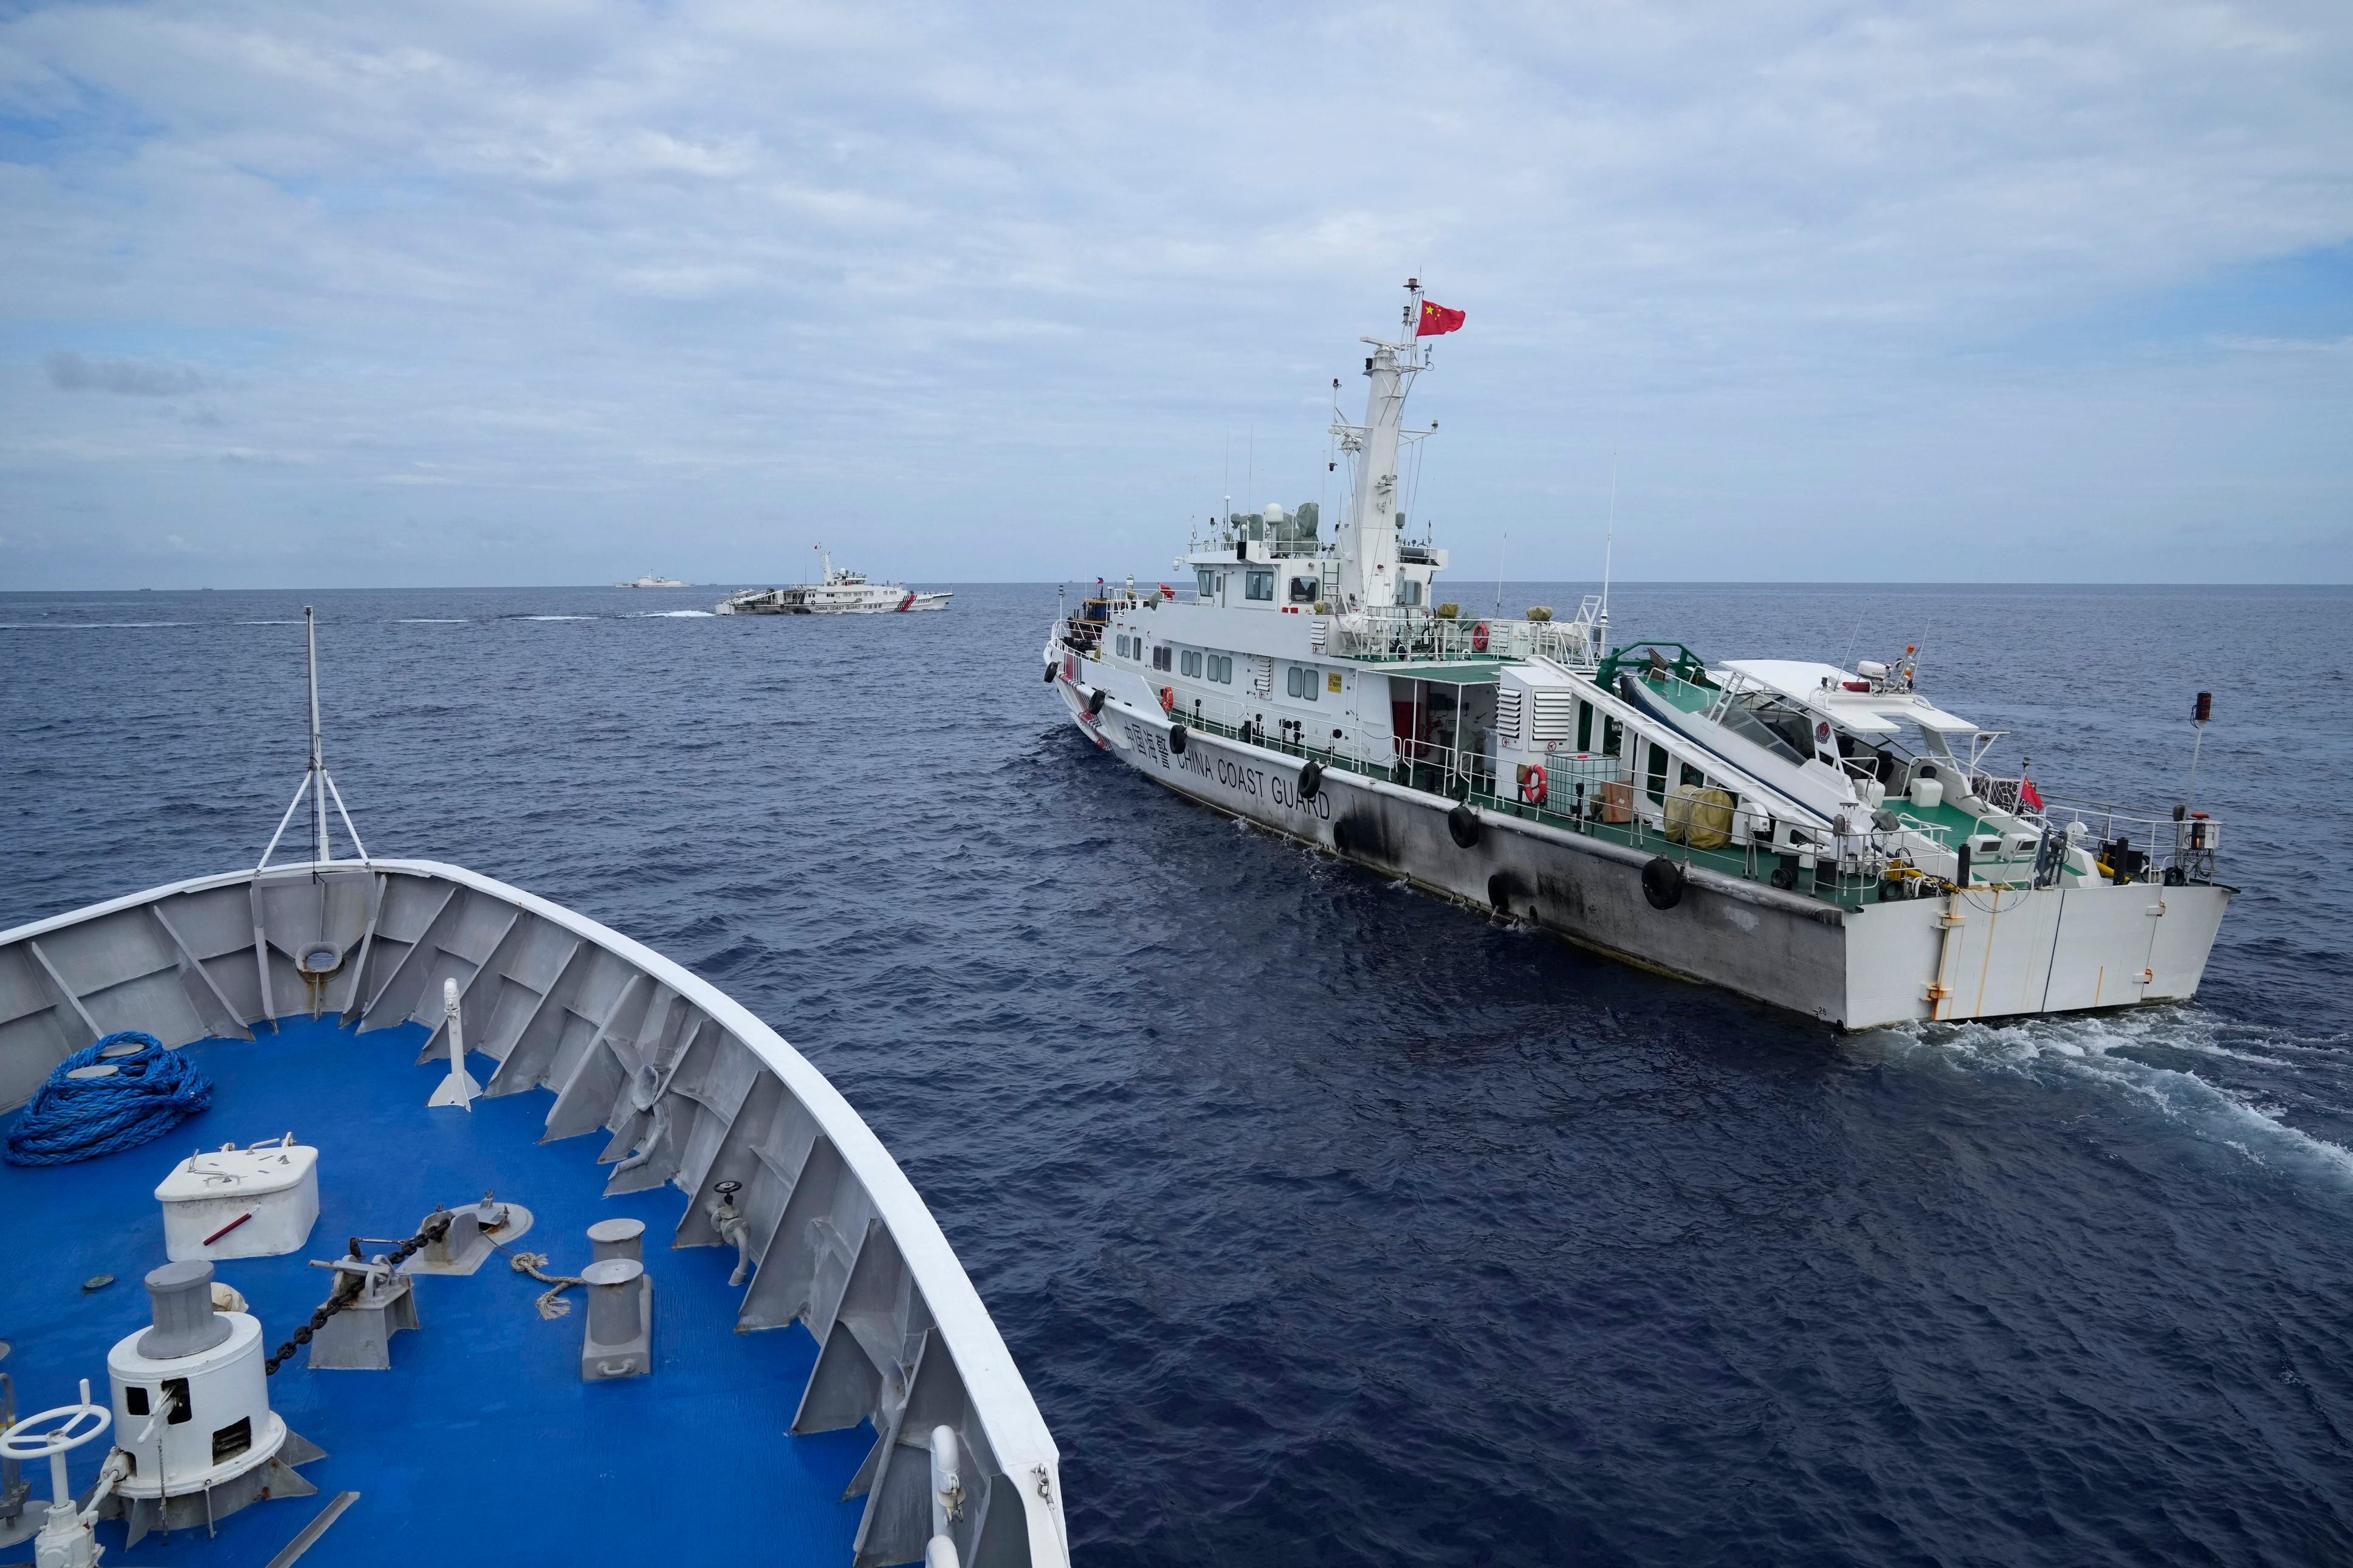 Barco de la Guardia Costera china pasa a escasos metros del buque filipino BRP Cabra (AP Photo/Aaron Favila)